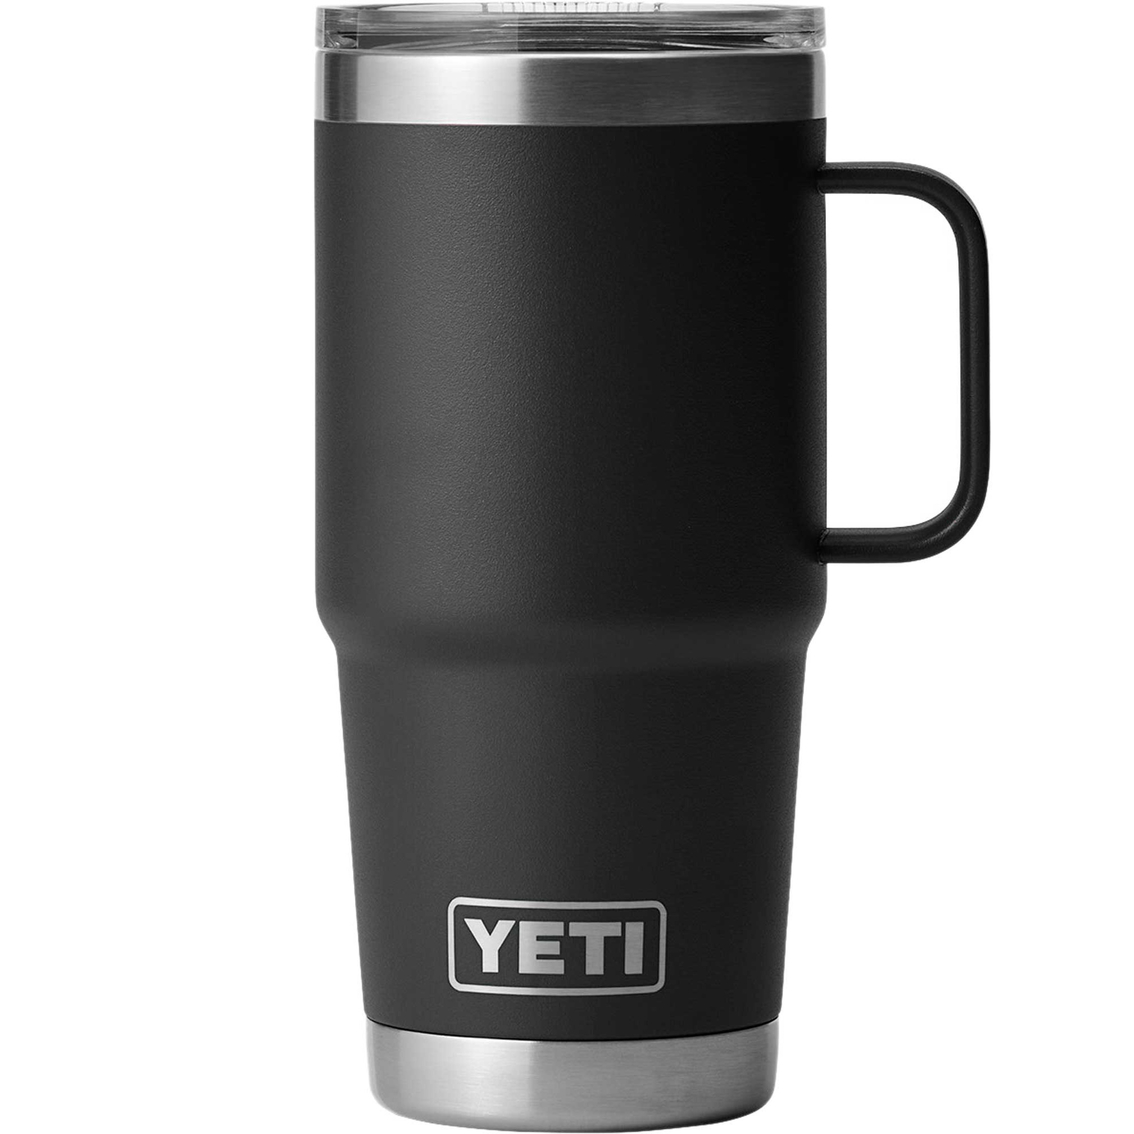 Yeti Rambler 20 oz. Travel Mug with Stronghold Lid - Image 1 of 3